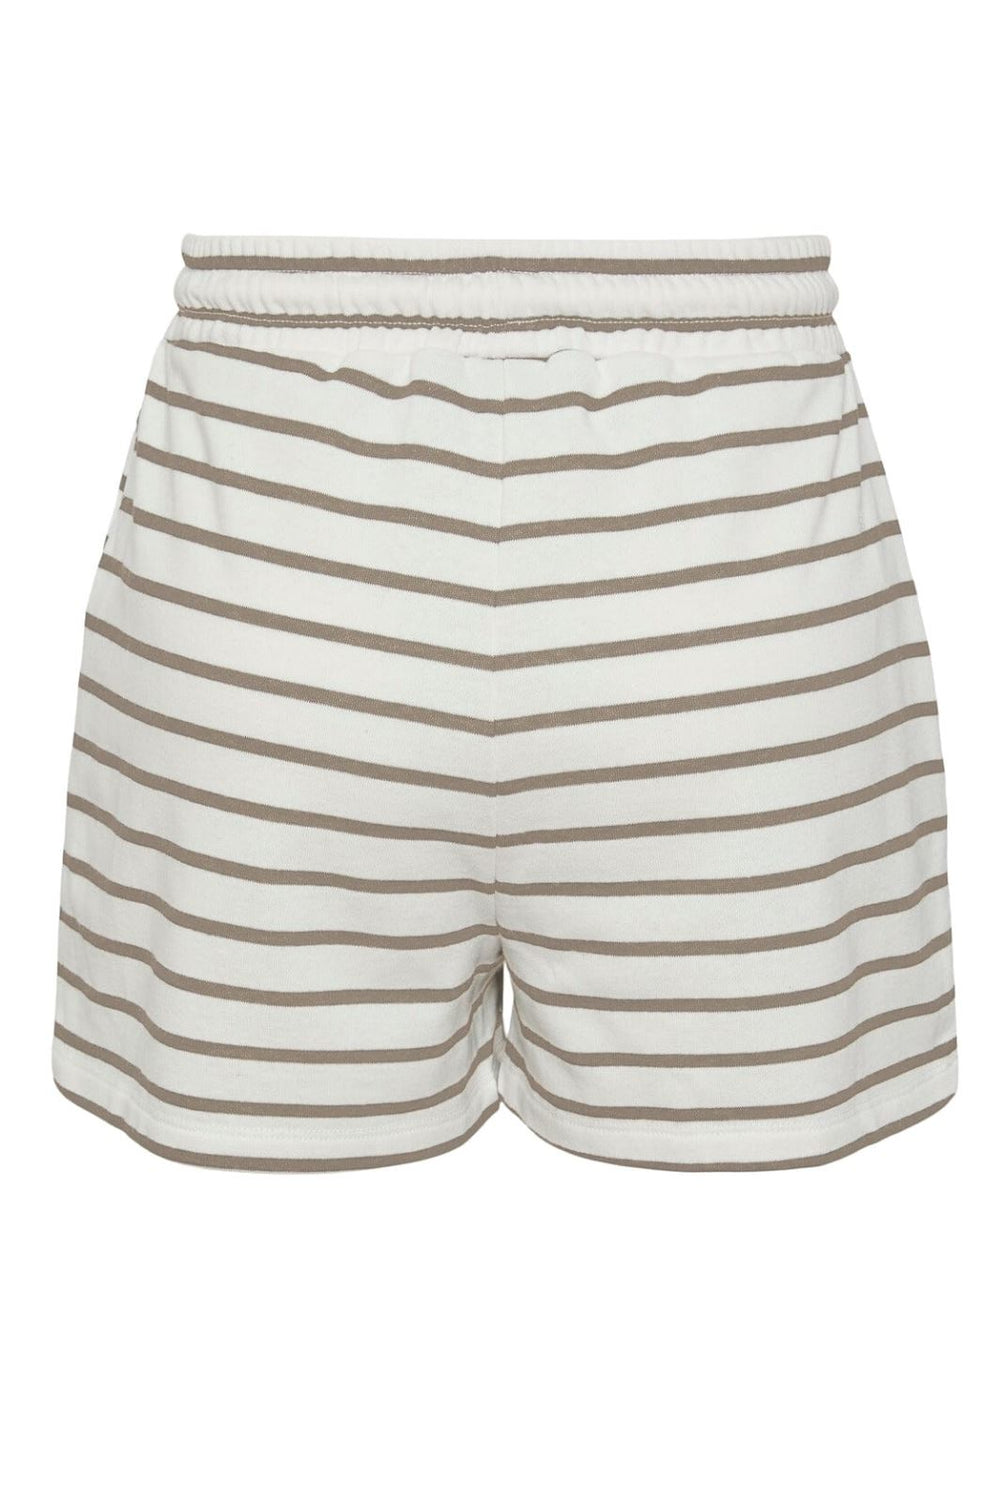 Pieces - Pcchilli Summer Shorts Stripe - 4410142 Cloud Dancer Silver Mink Shorts 